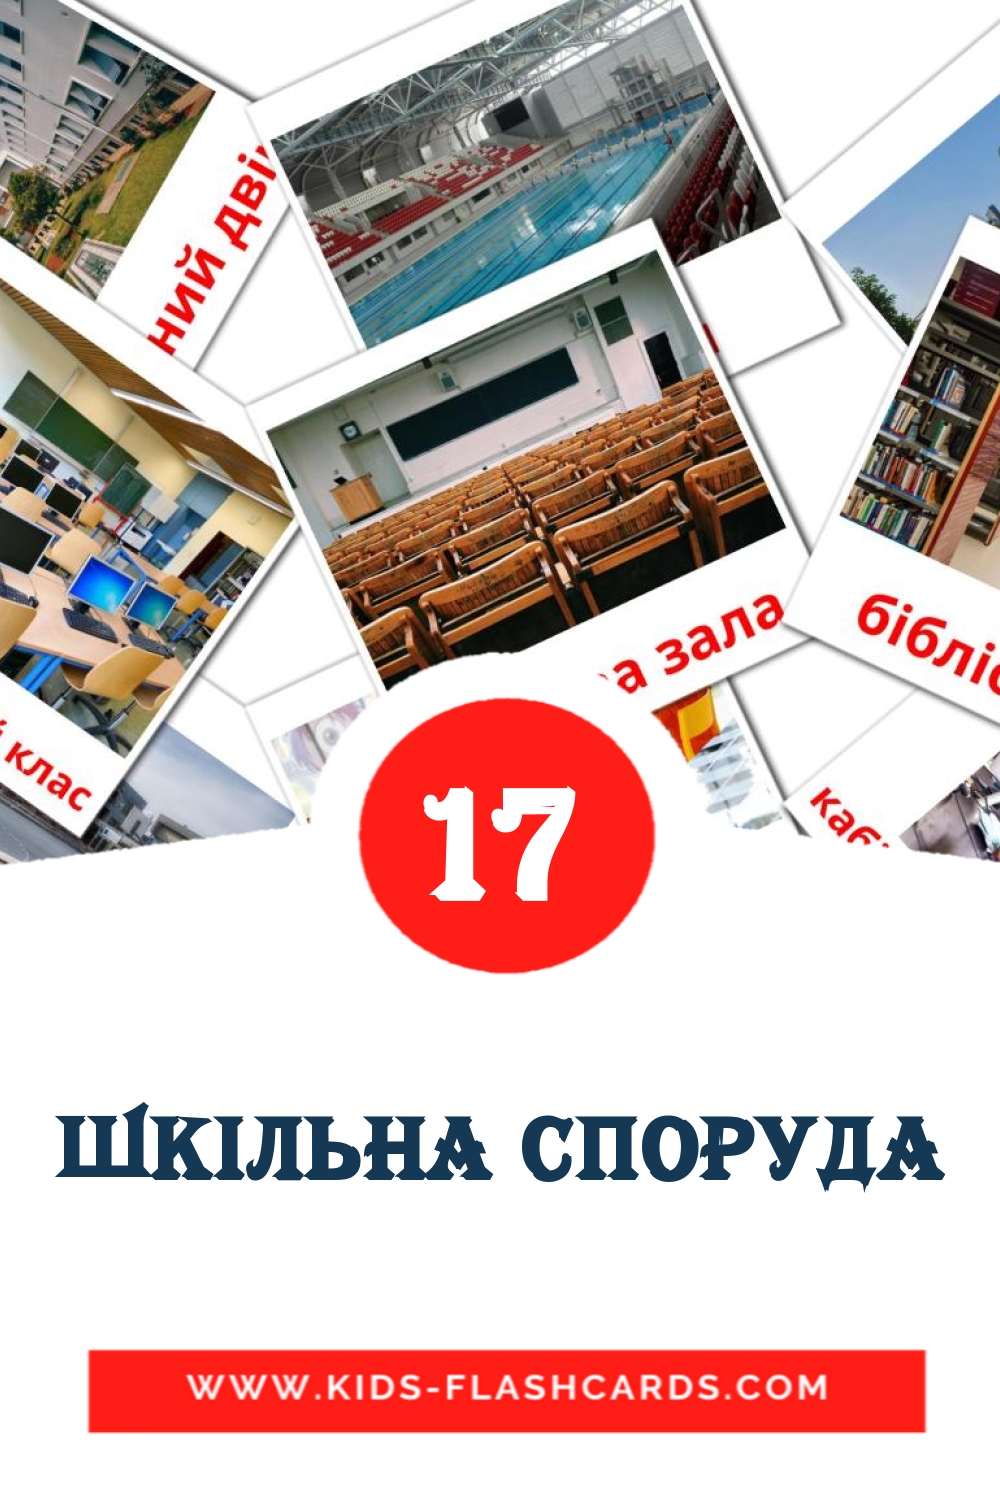 17 Шкiльна споруда Bildkarten für den Kindergarten auf Ukrainisch